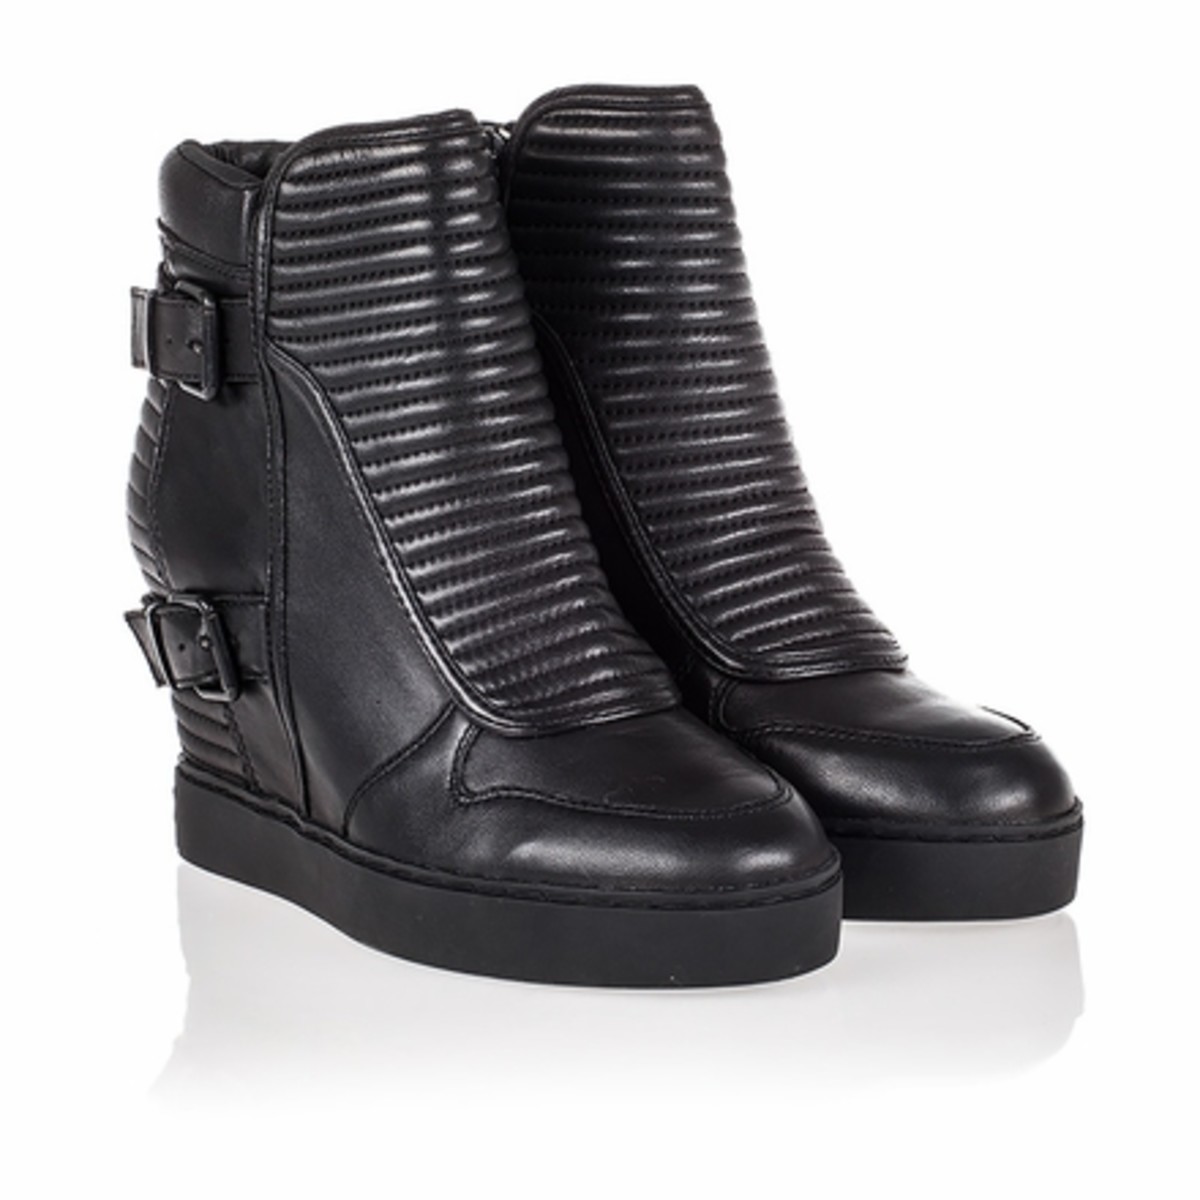 ash-batma-womens-wedge-sneaker-black-leather-340573-001-9